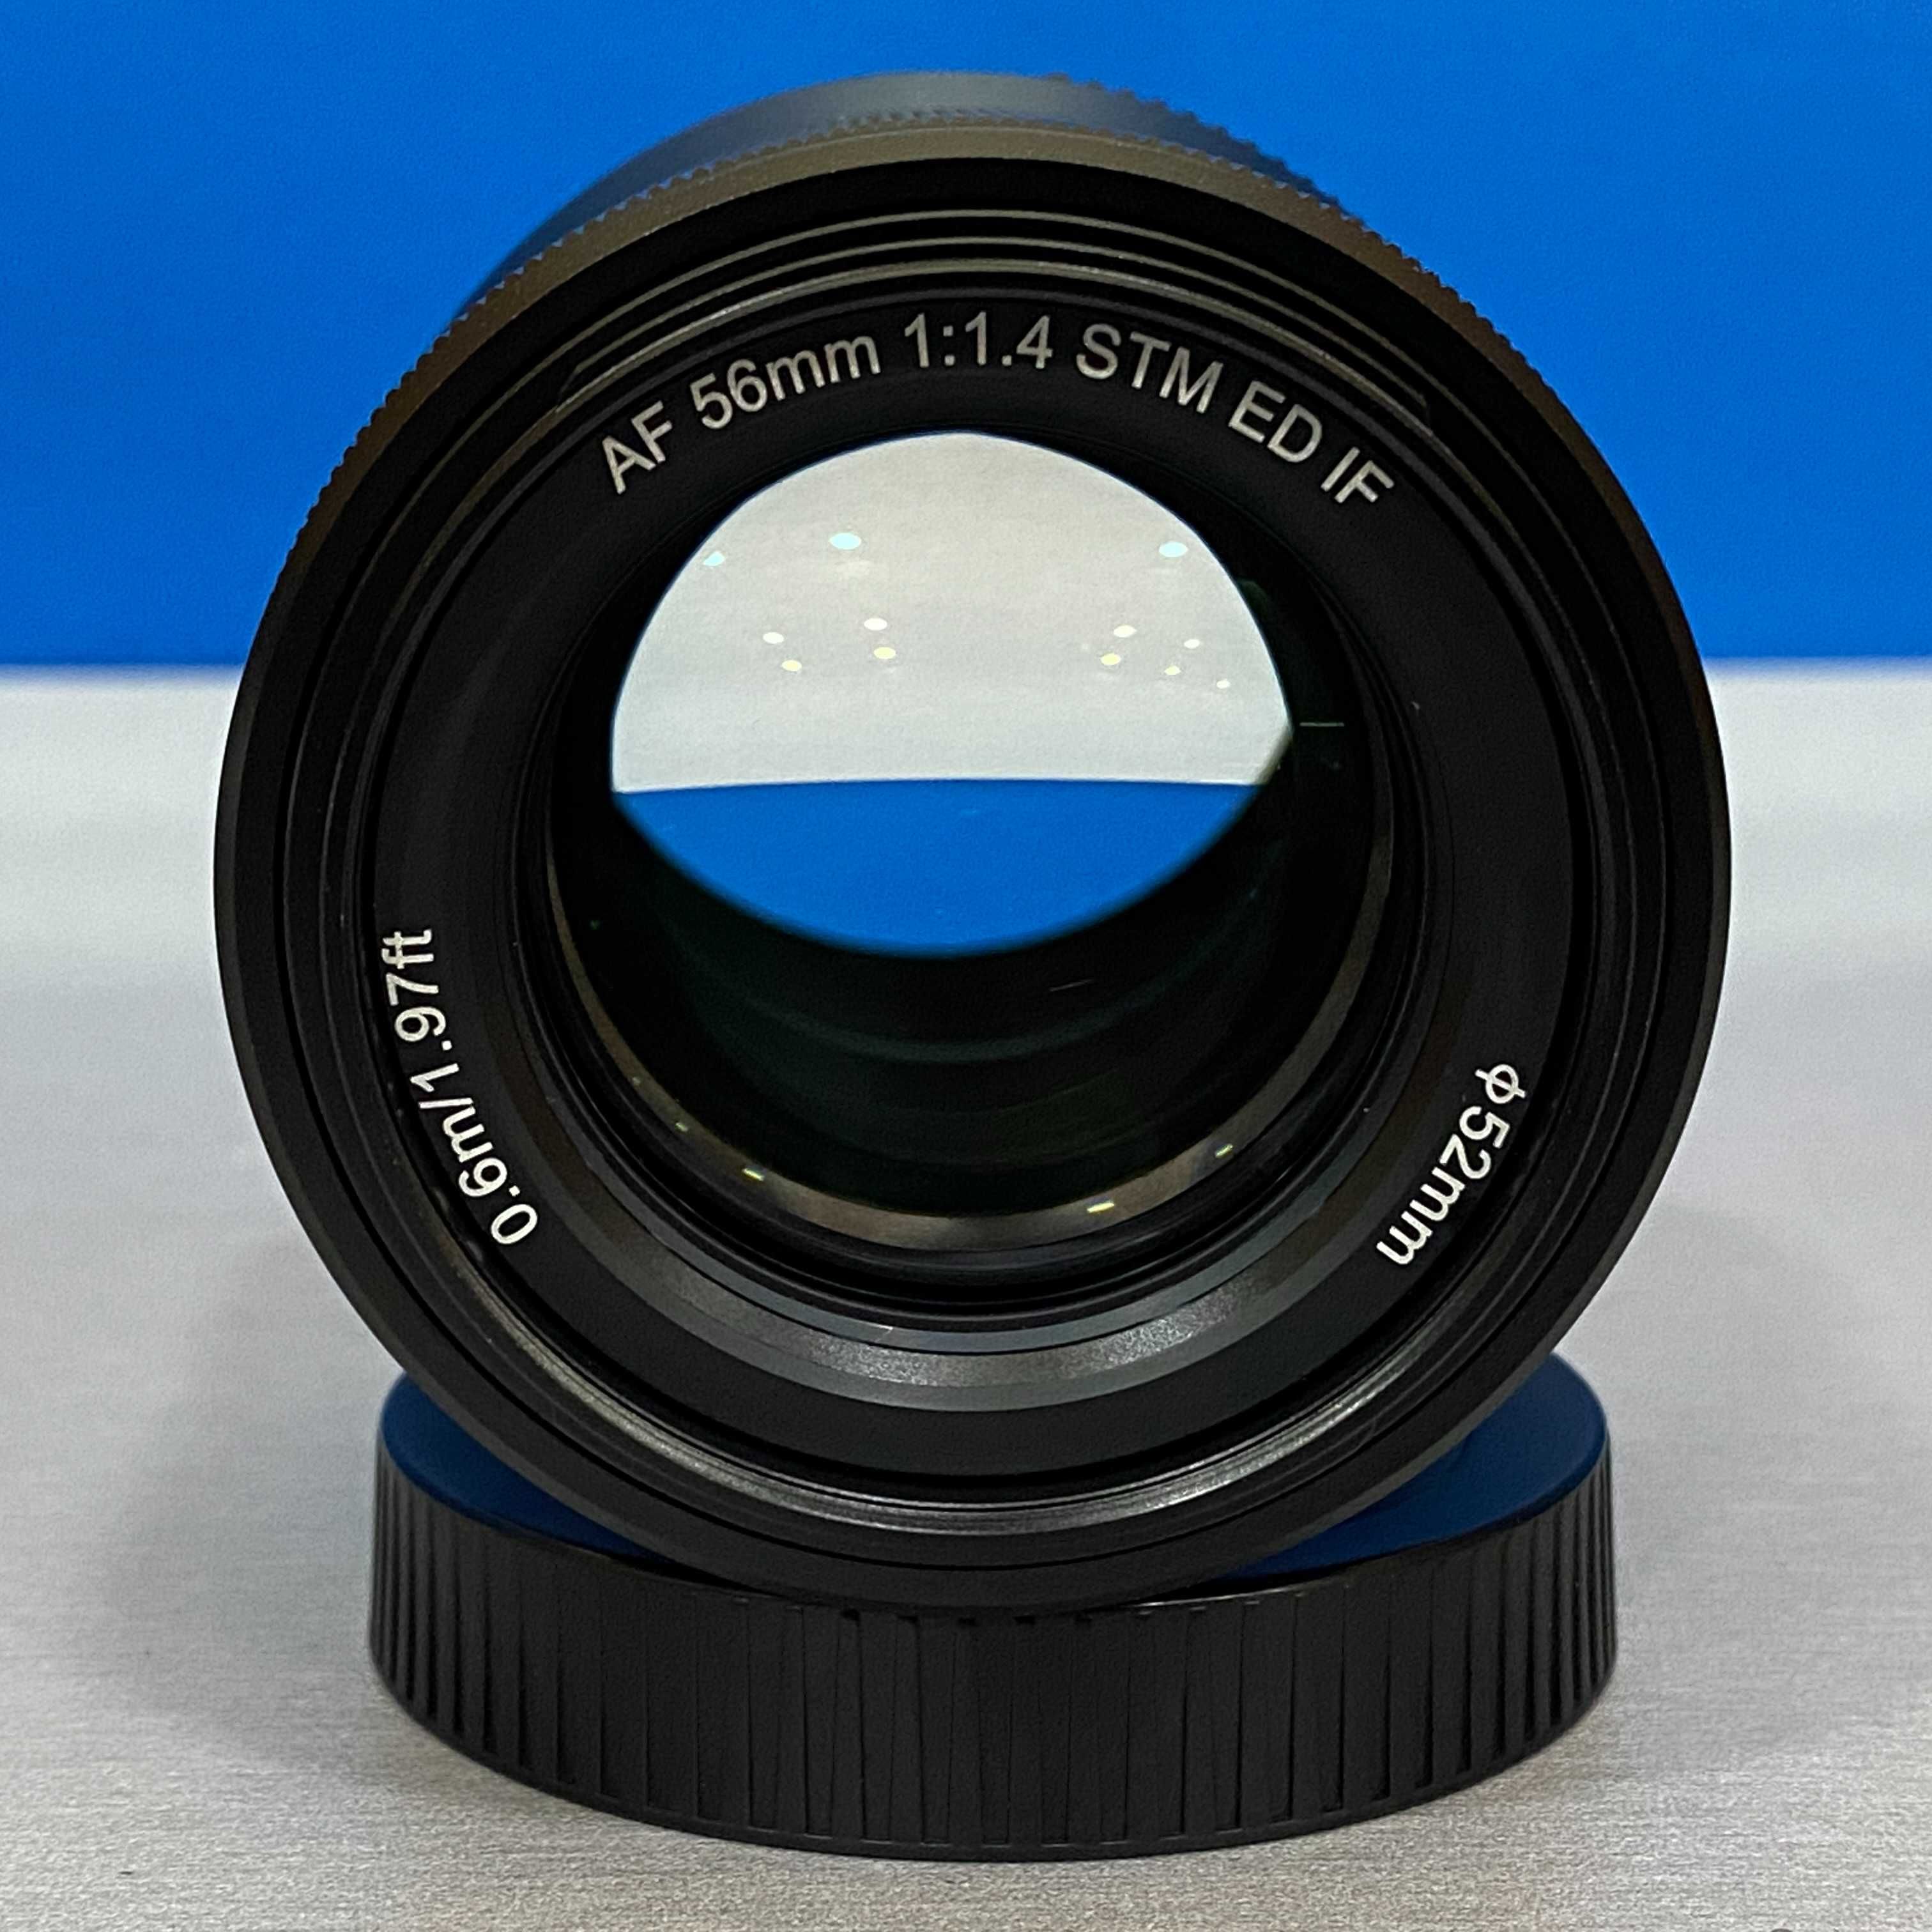 Viltrox AF 56mm f/1.4 STM ED IF (Nikon Z)